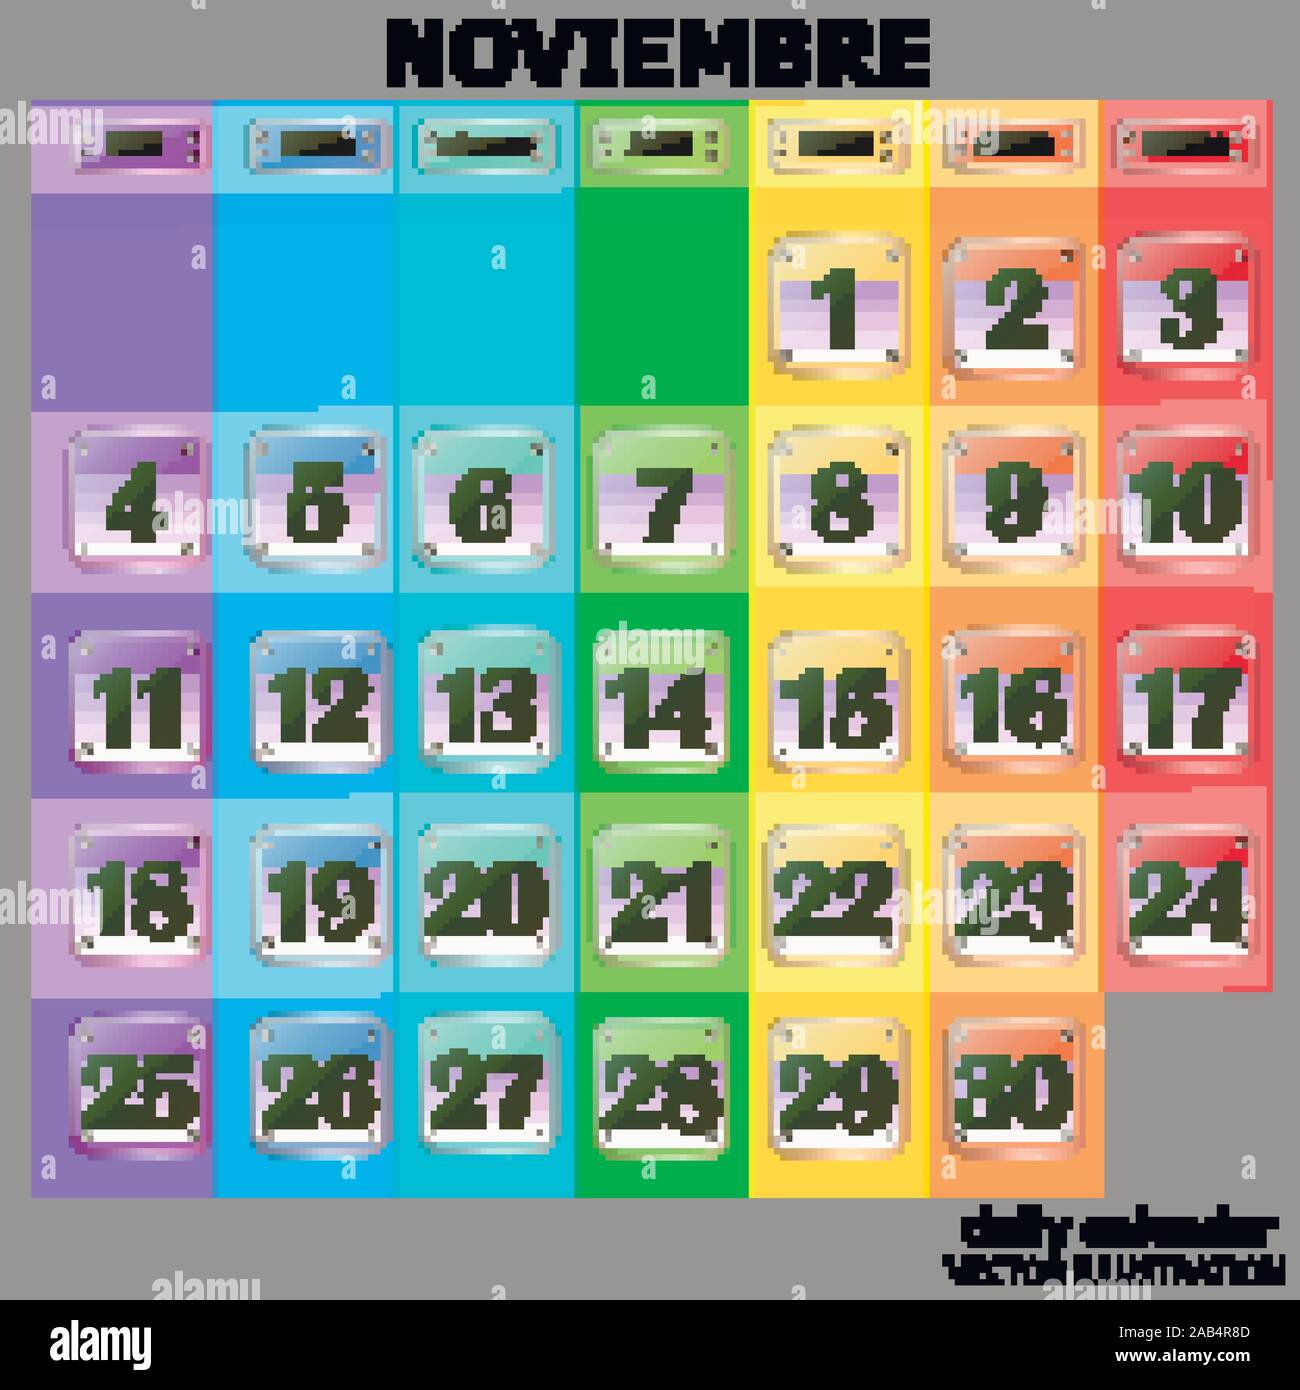 Bunte Kalender für November 2019 in spanischer Sprache. Schaltflächen mit Kalender Termine für den Monat November. Die für die Planung wichtigen Tage. Banner für Feiertage und besondere Tage. Vector Illustration. Stock Vektor